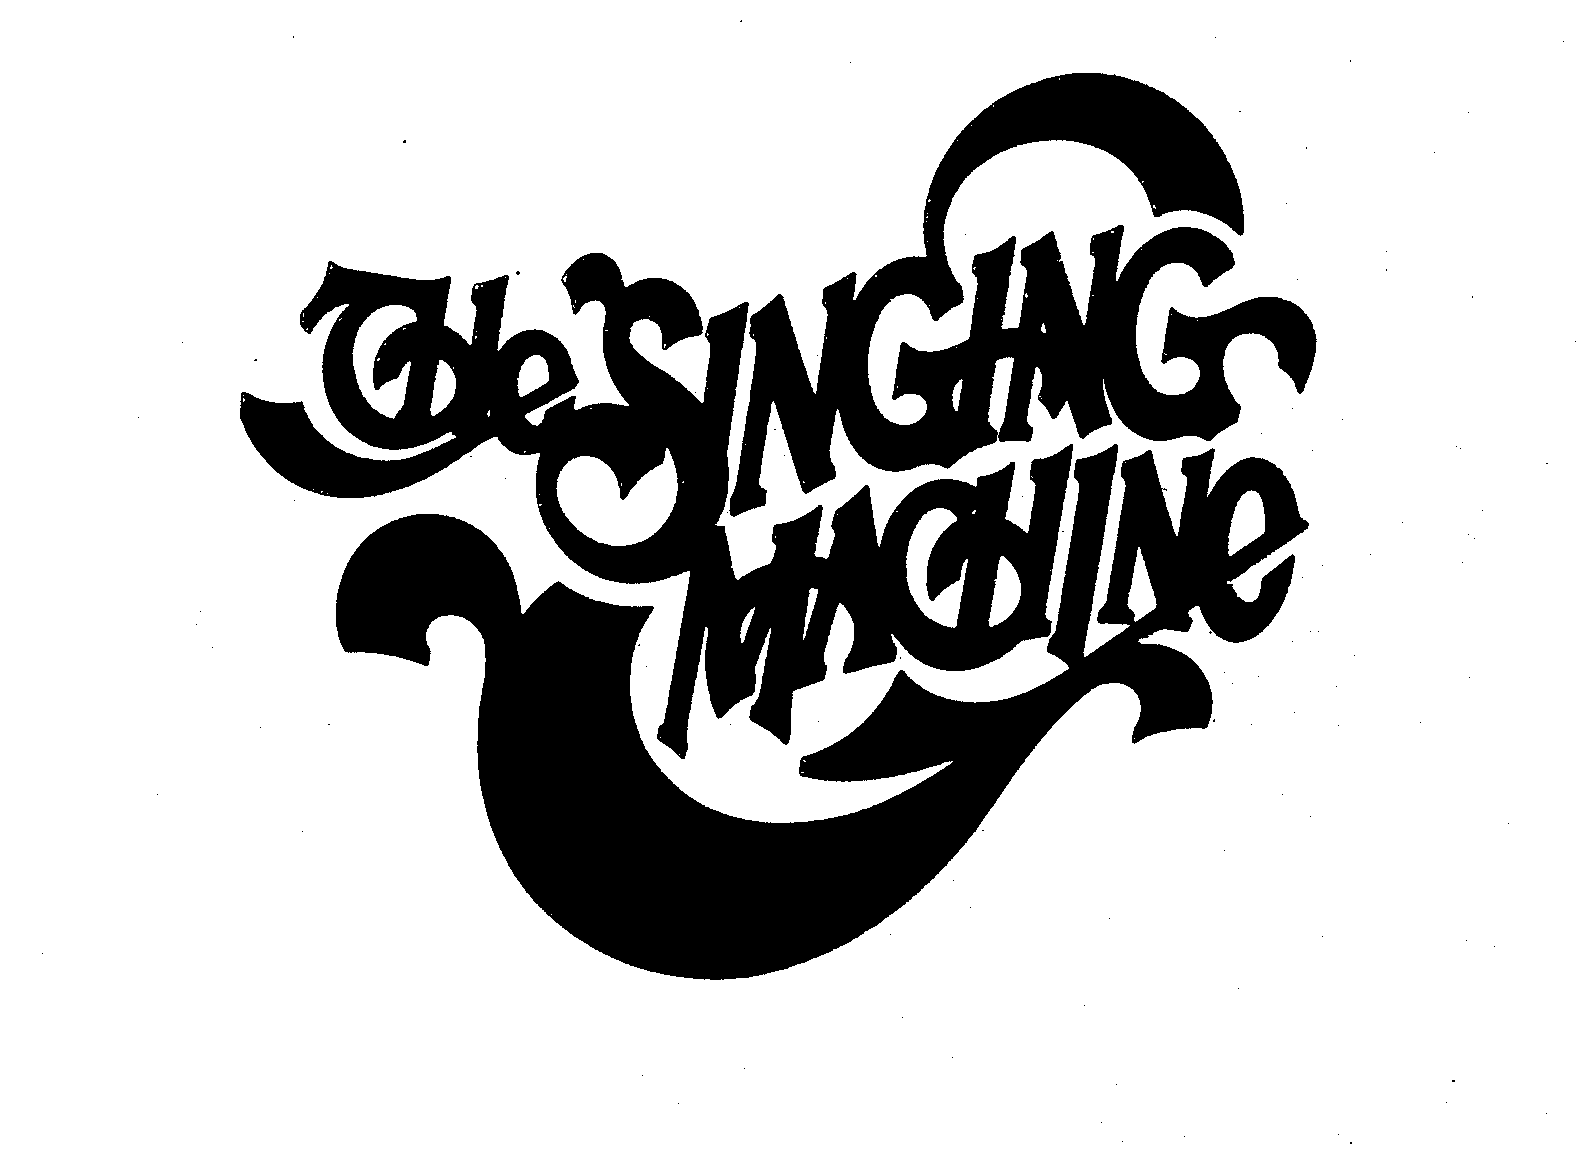  THE SINGING MACHINE